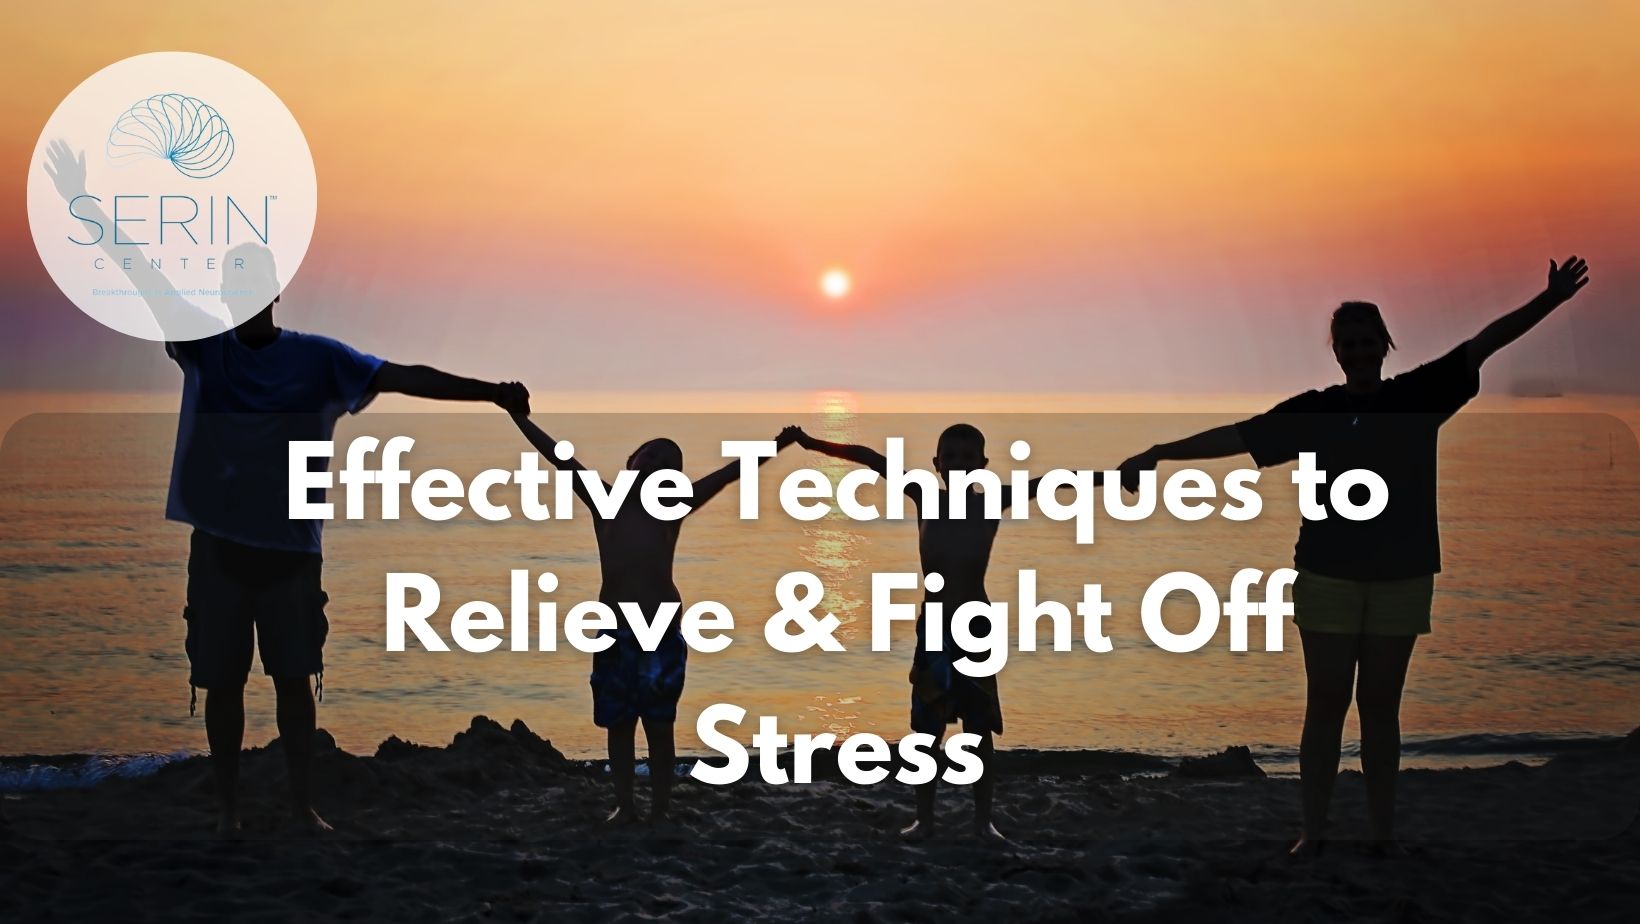 stress relief techniques - Serin Center